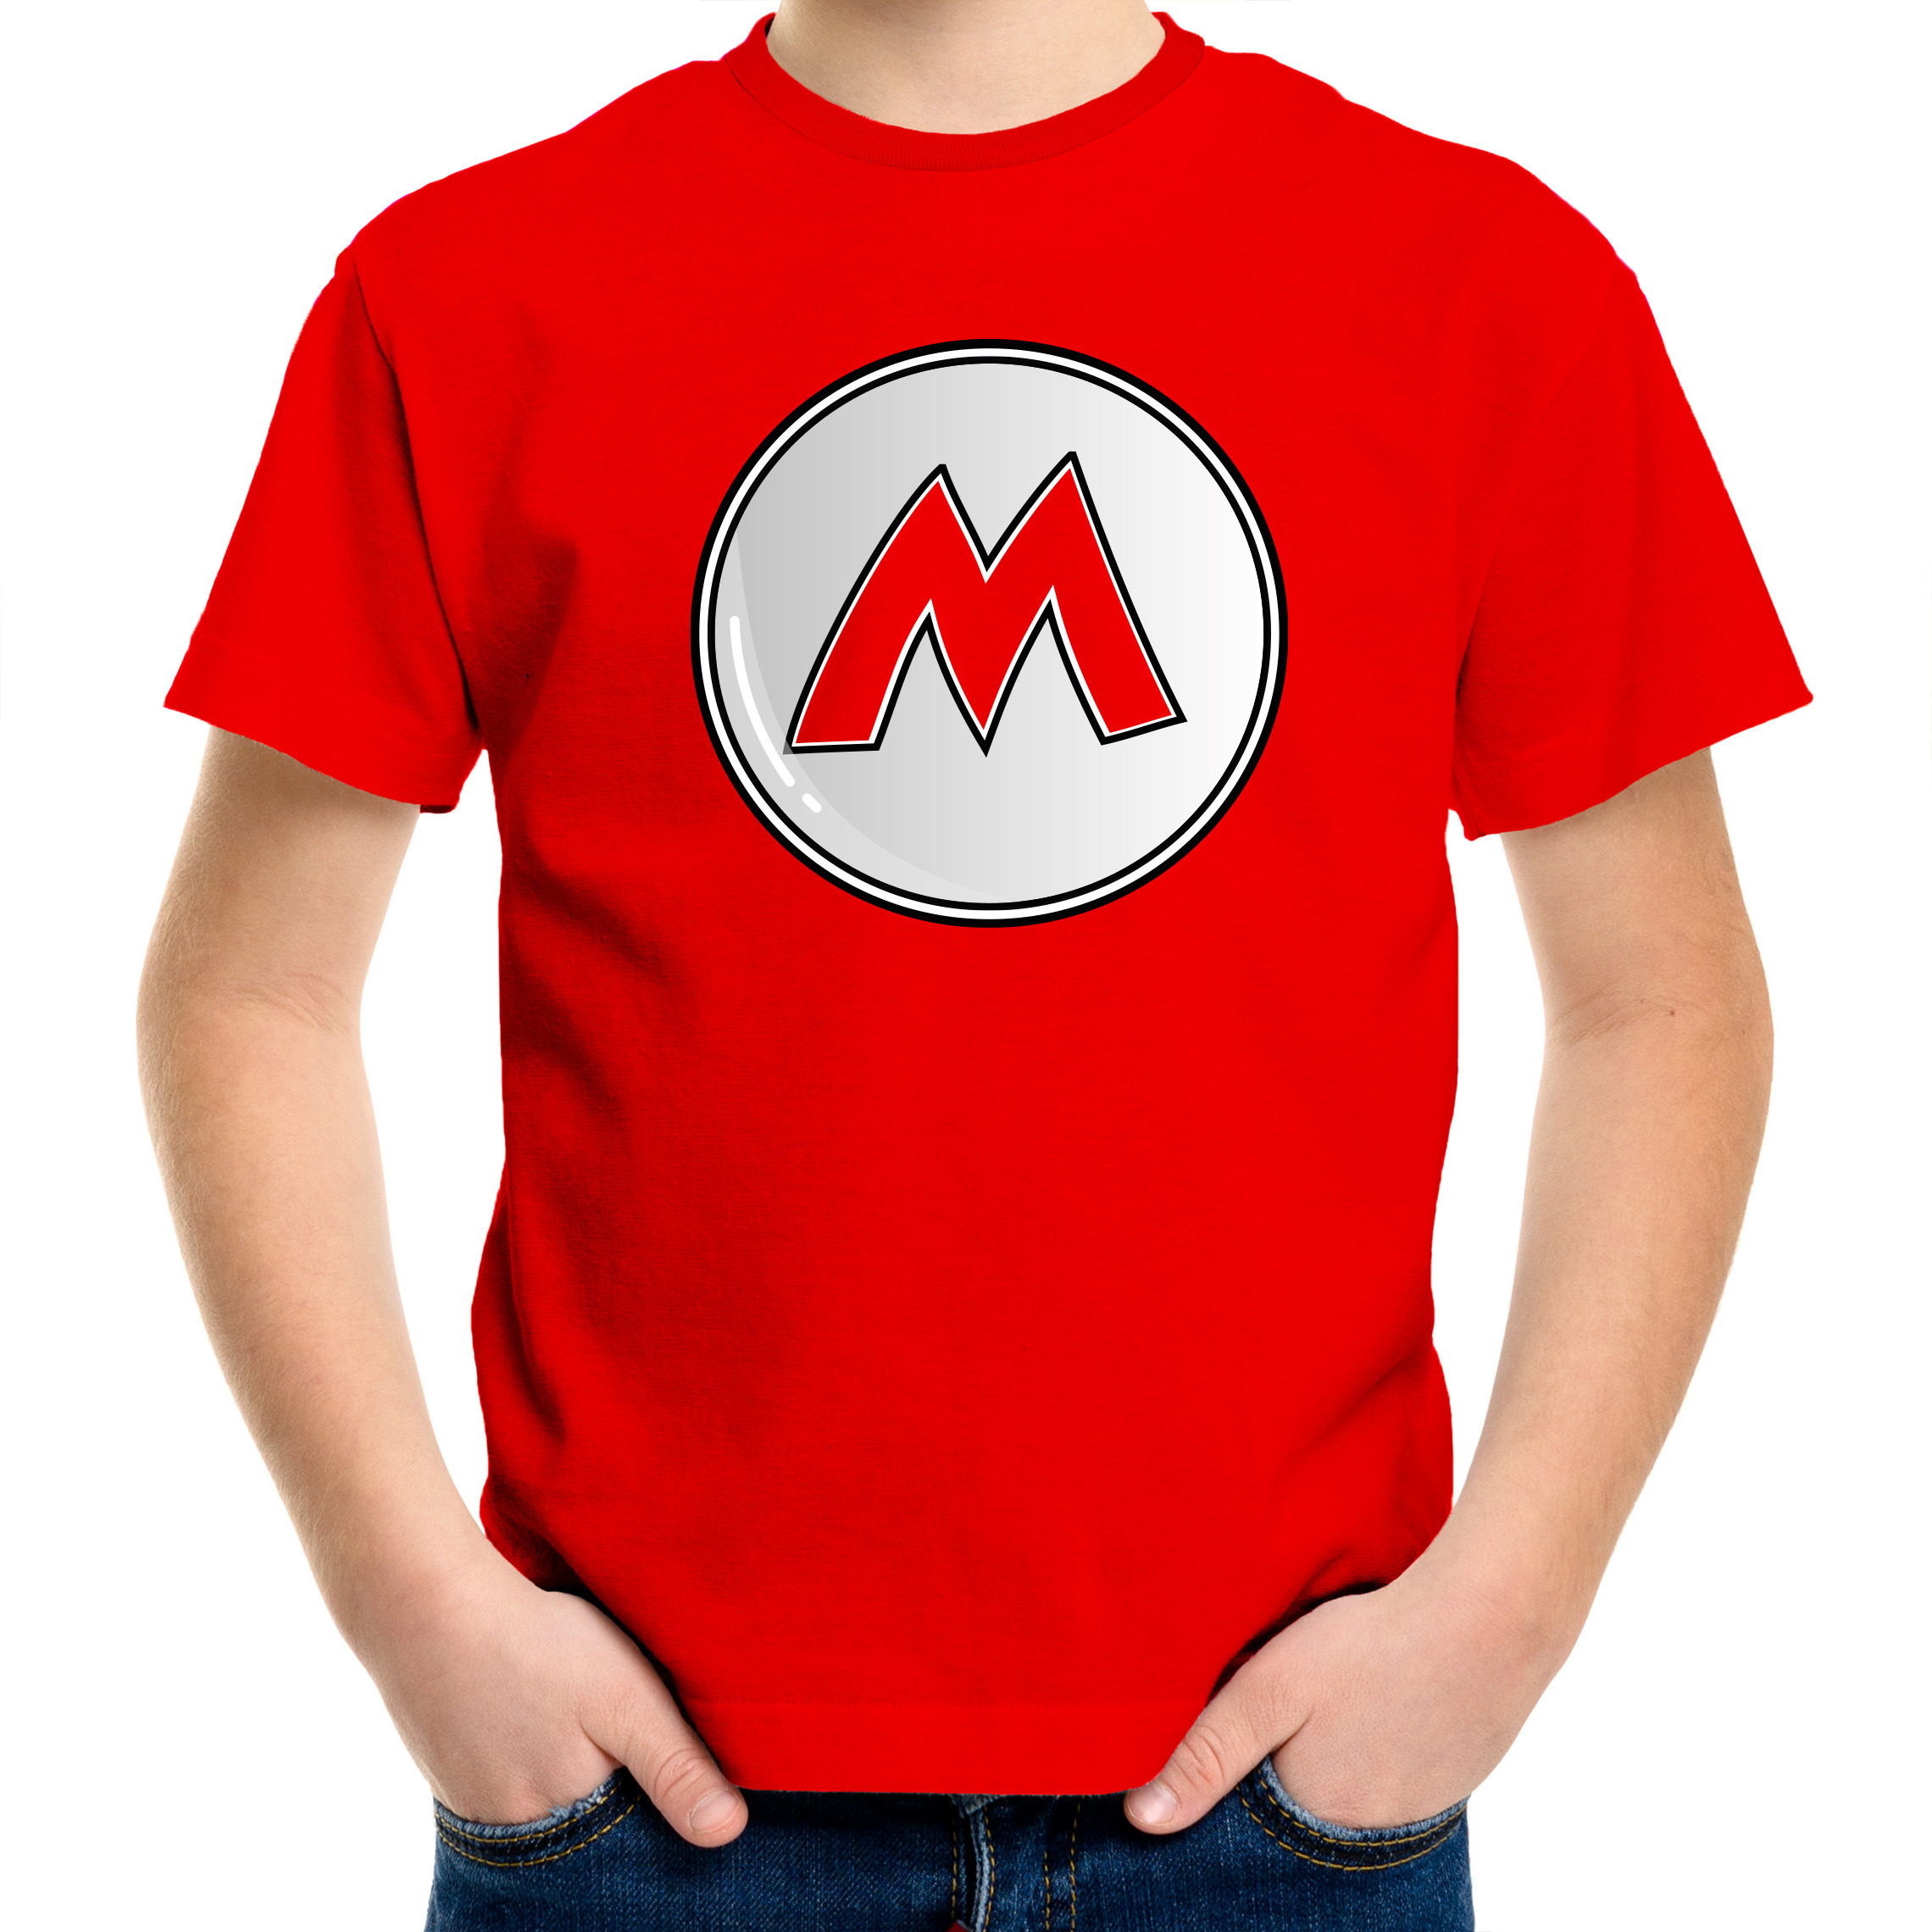 Afbeelding van Game verkleed t-shirt voor kinderen - loodgieter Mario - rood - carnaval/themafeest kostuum